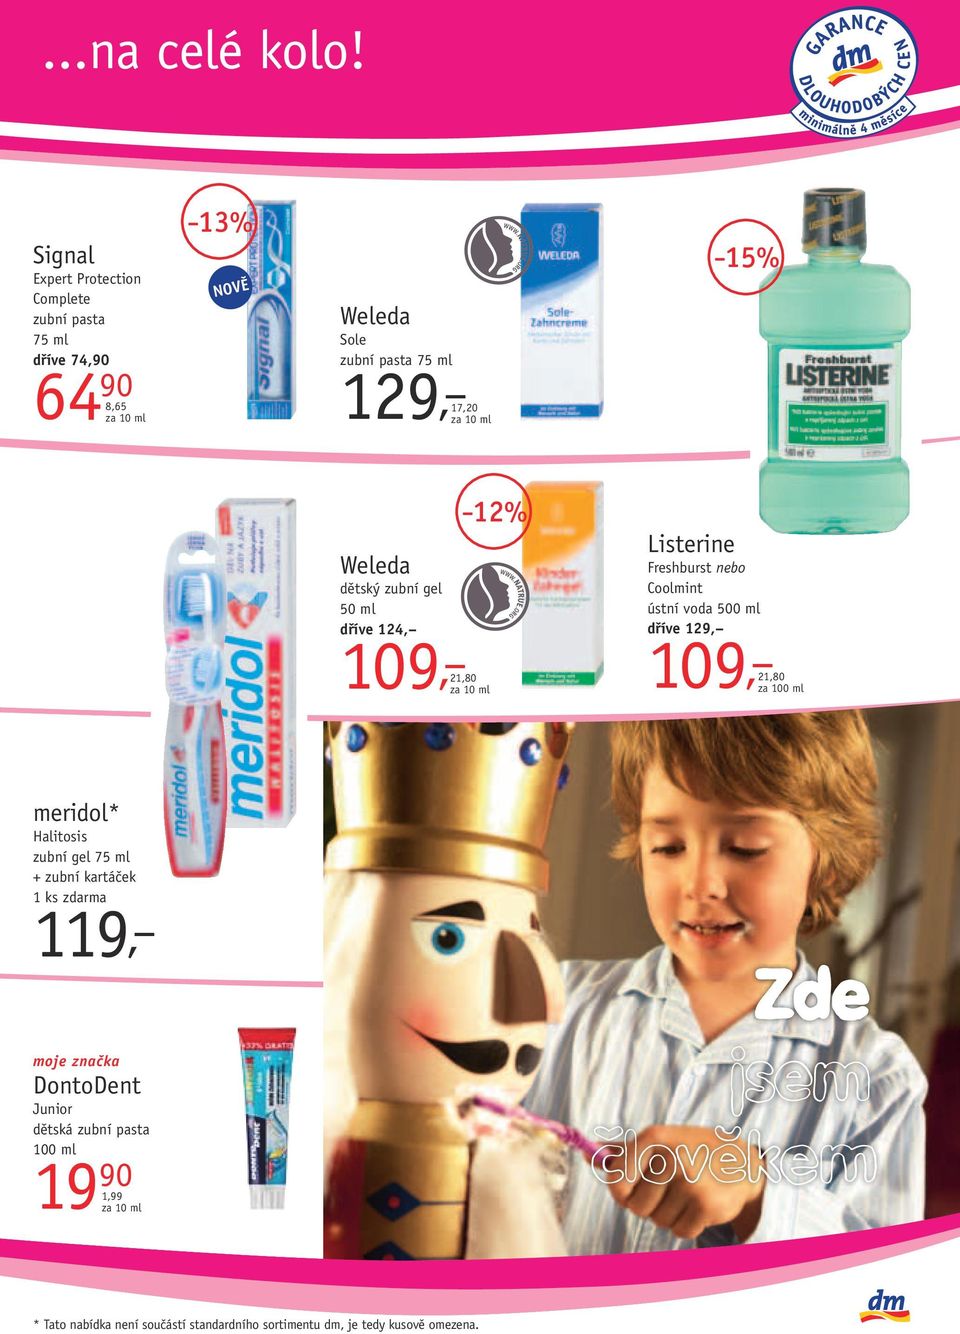 17,20 15% Weleda dětský zubní gel 50 ml dříve 124, 109, 21,80 12% Listerine Freshburst nebo Coolmint ústní voda 500 ml